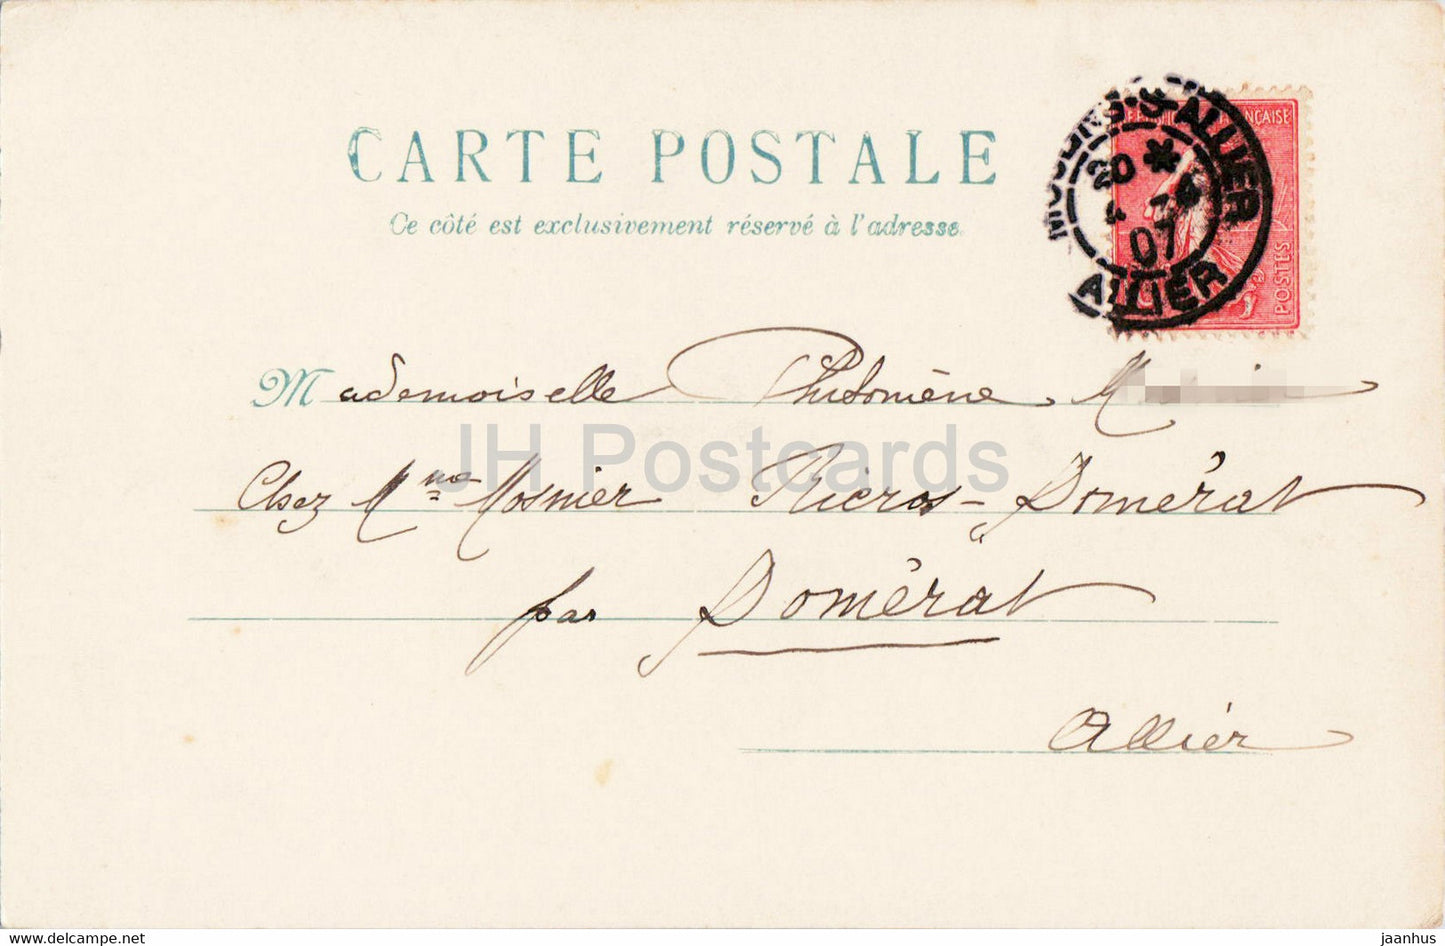 Carte de voeux anniversaire - fleurs bleues - illustration - carte postale ancienne - 1907 - France - occasion